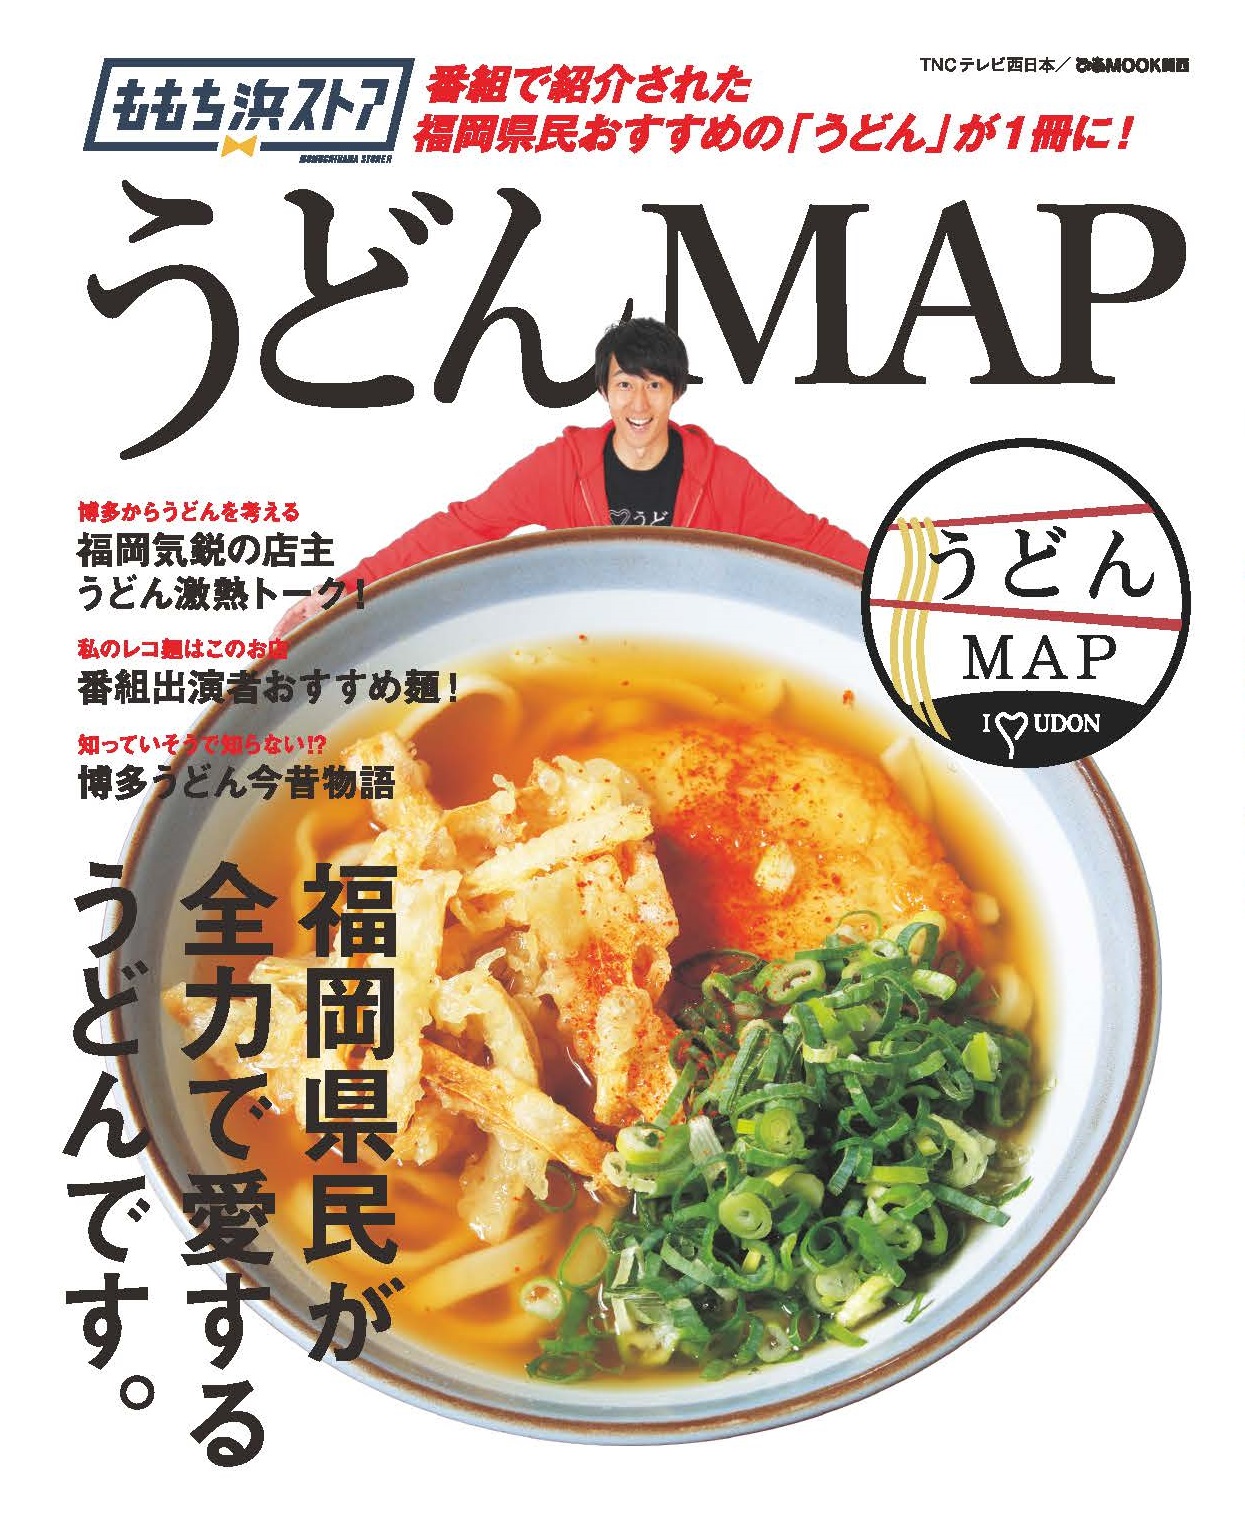 テレビ西日本 制作番組 ももち浜ストア 人気のコーナー うどん Map が１冊の本に ぴあ株式会社のプレスリリース